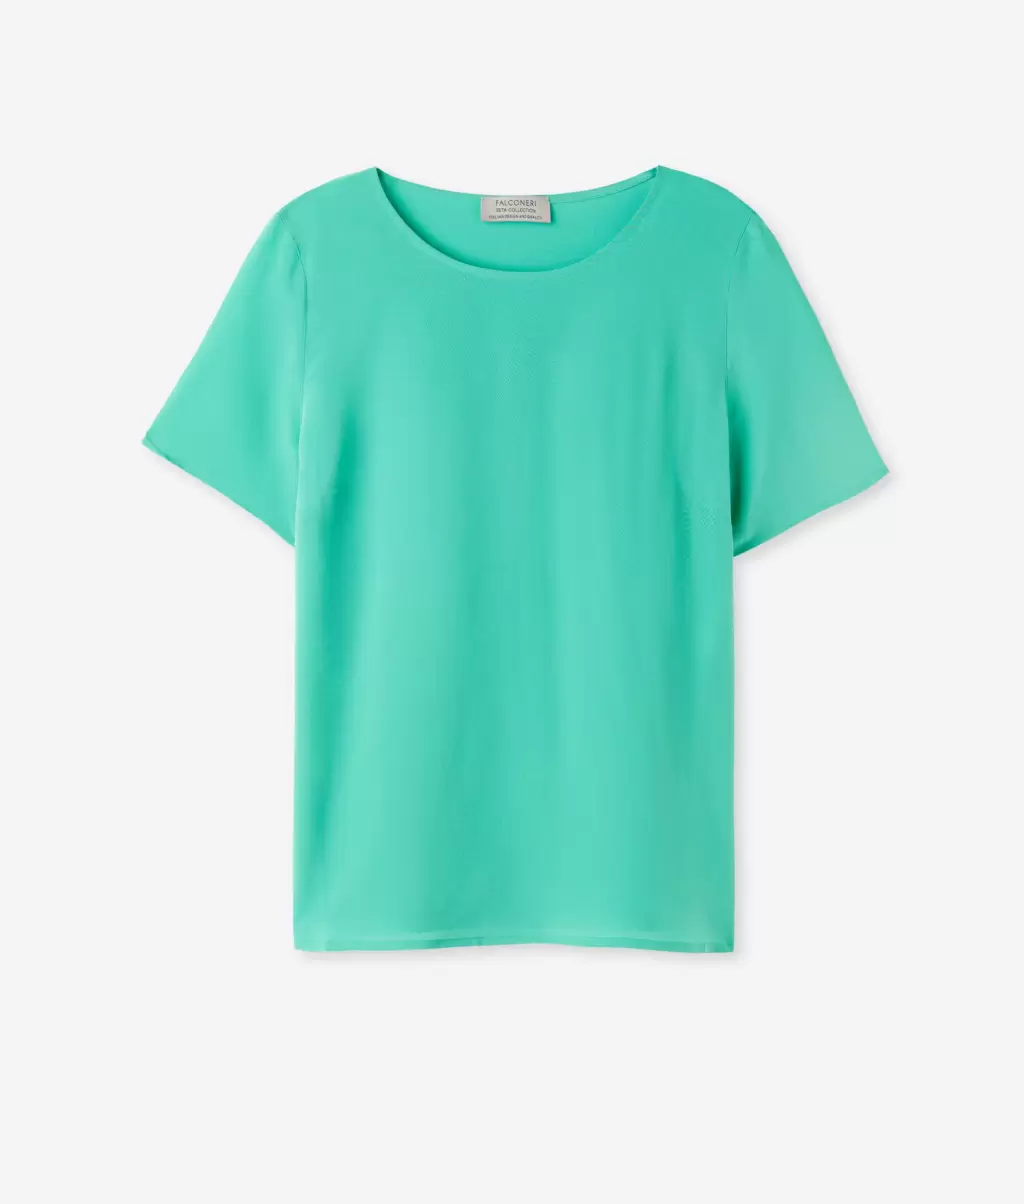 Kobieta Topy I T-Shirty Green Jedwabna Koszulka Z Okrągłym Dekoltem Falconeri - 4